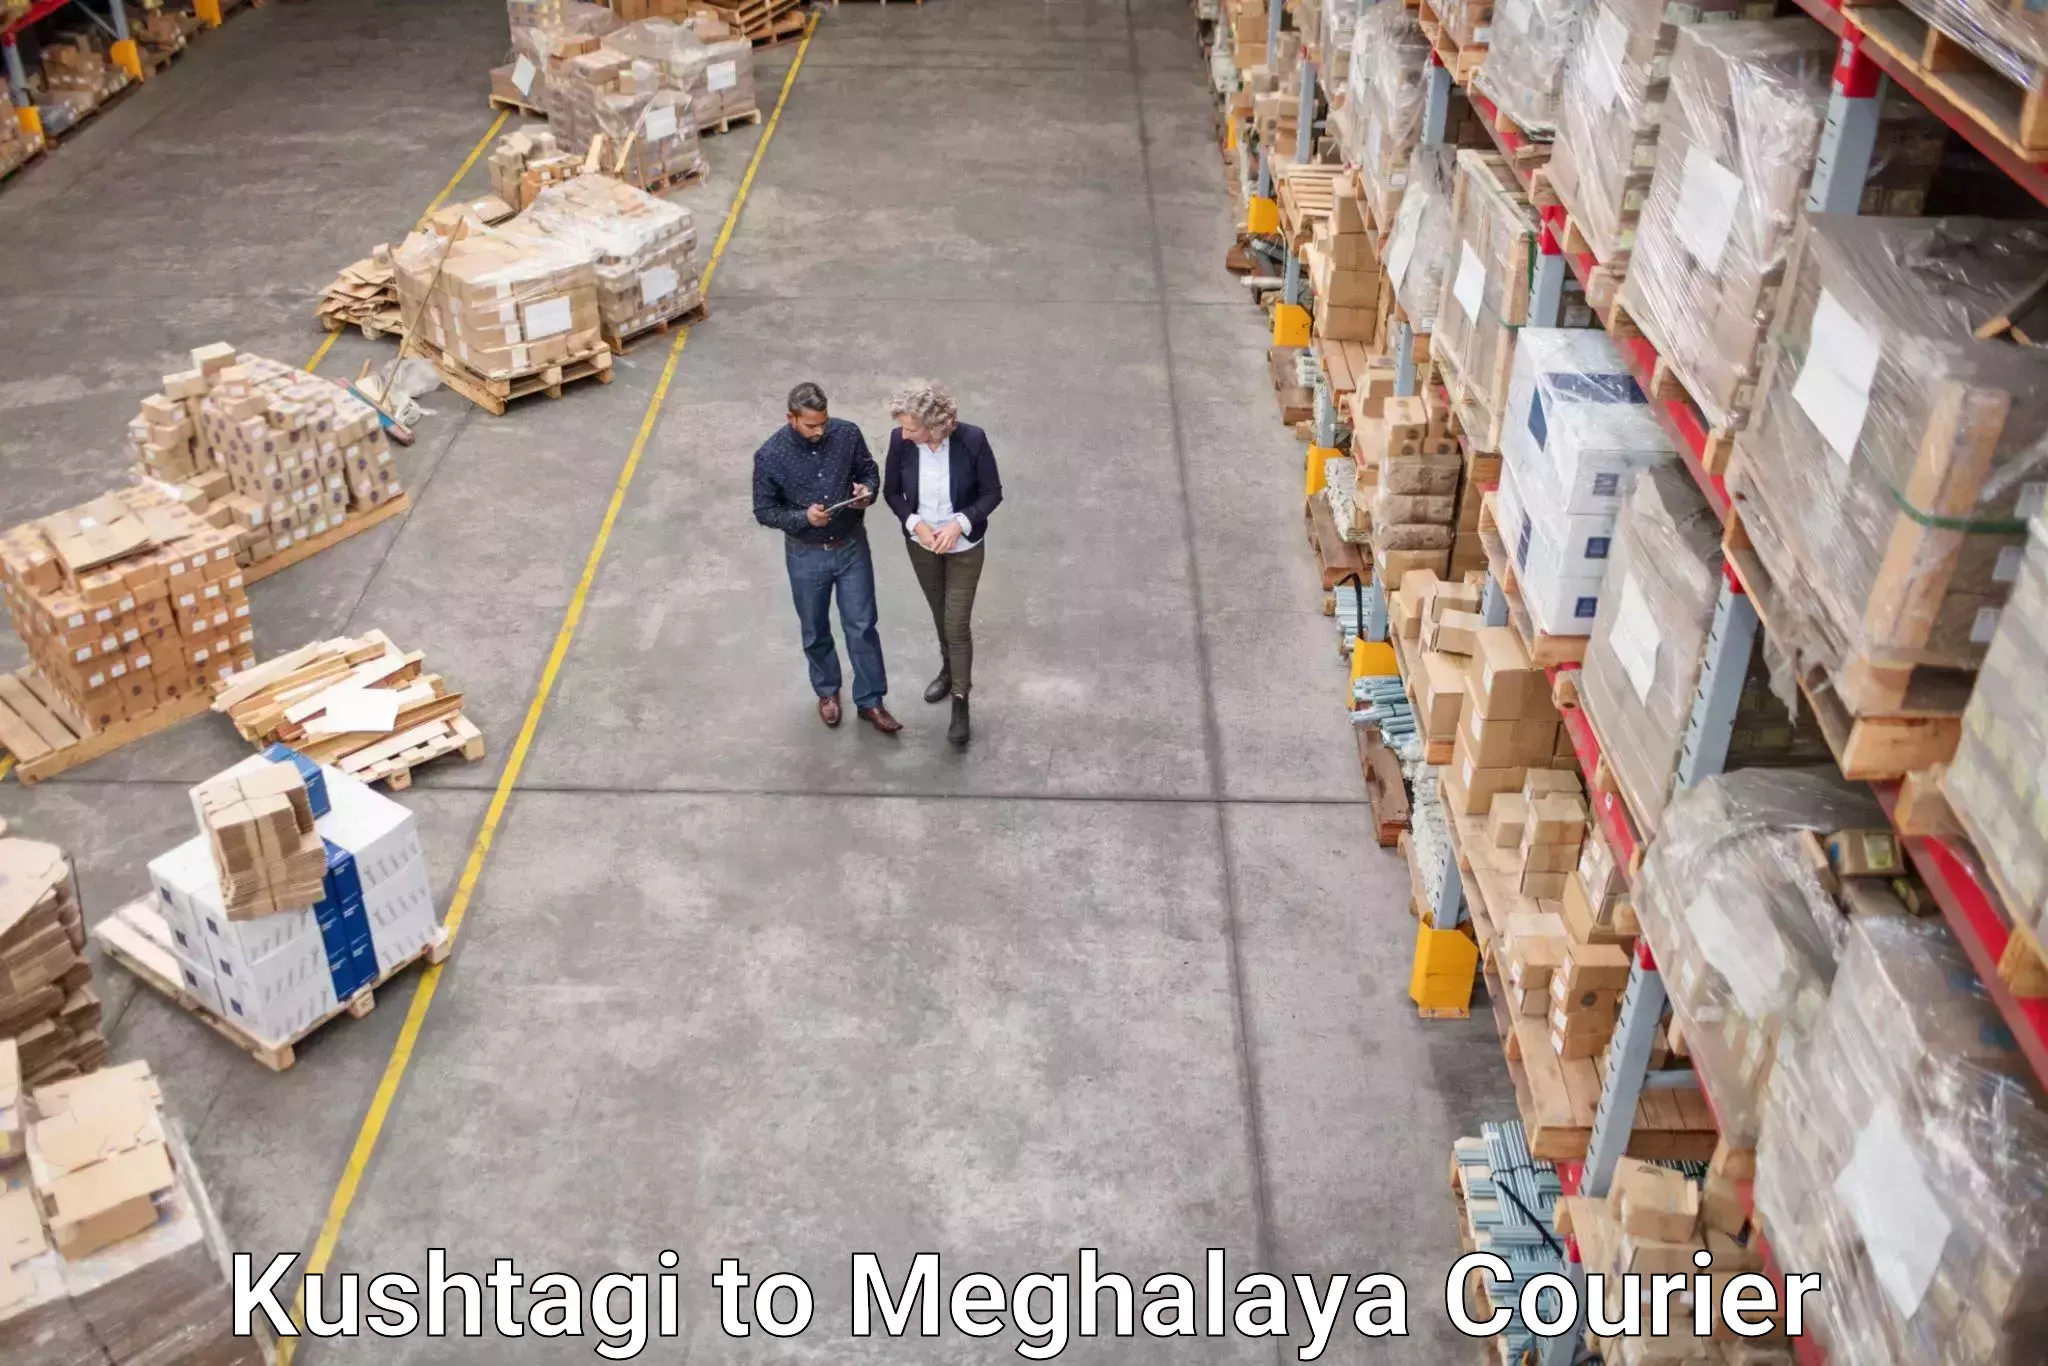 Courier service comparison Kushtagi to Mairang